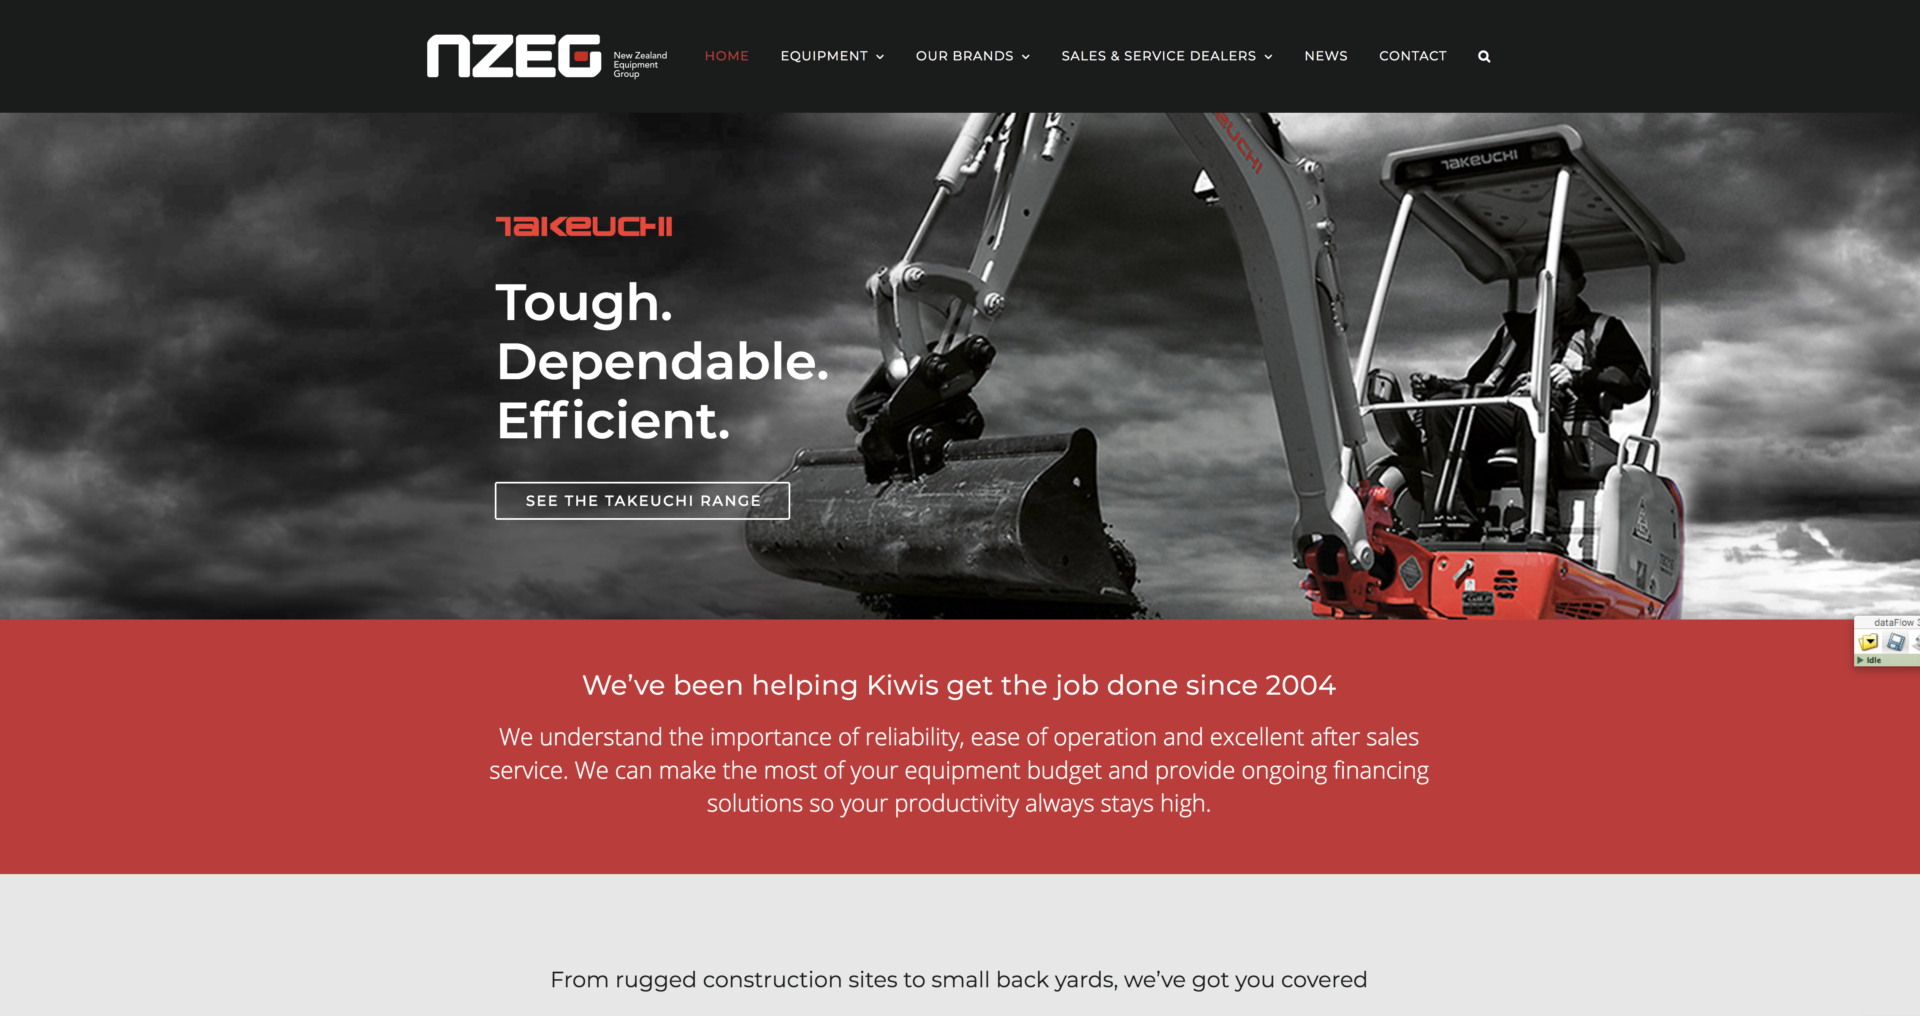 New Zealand Equipment Website